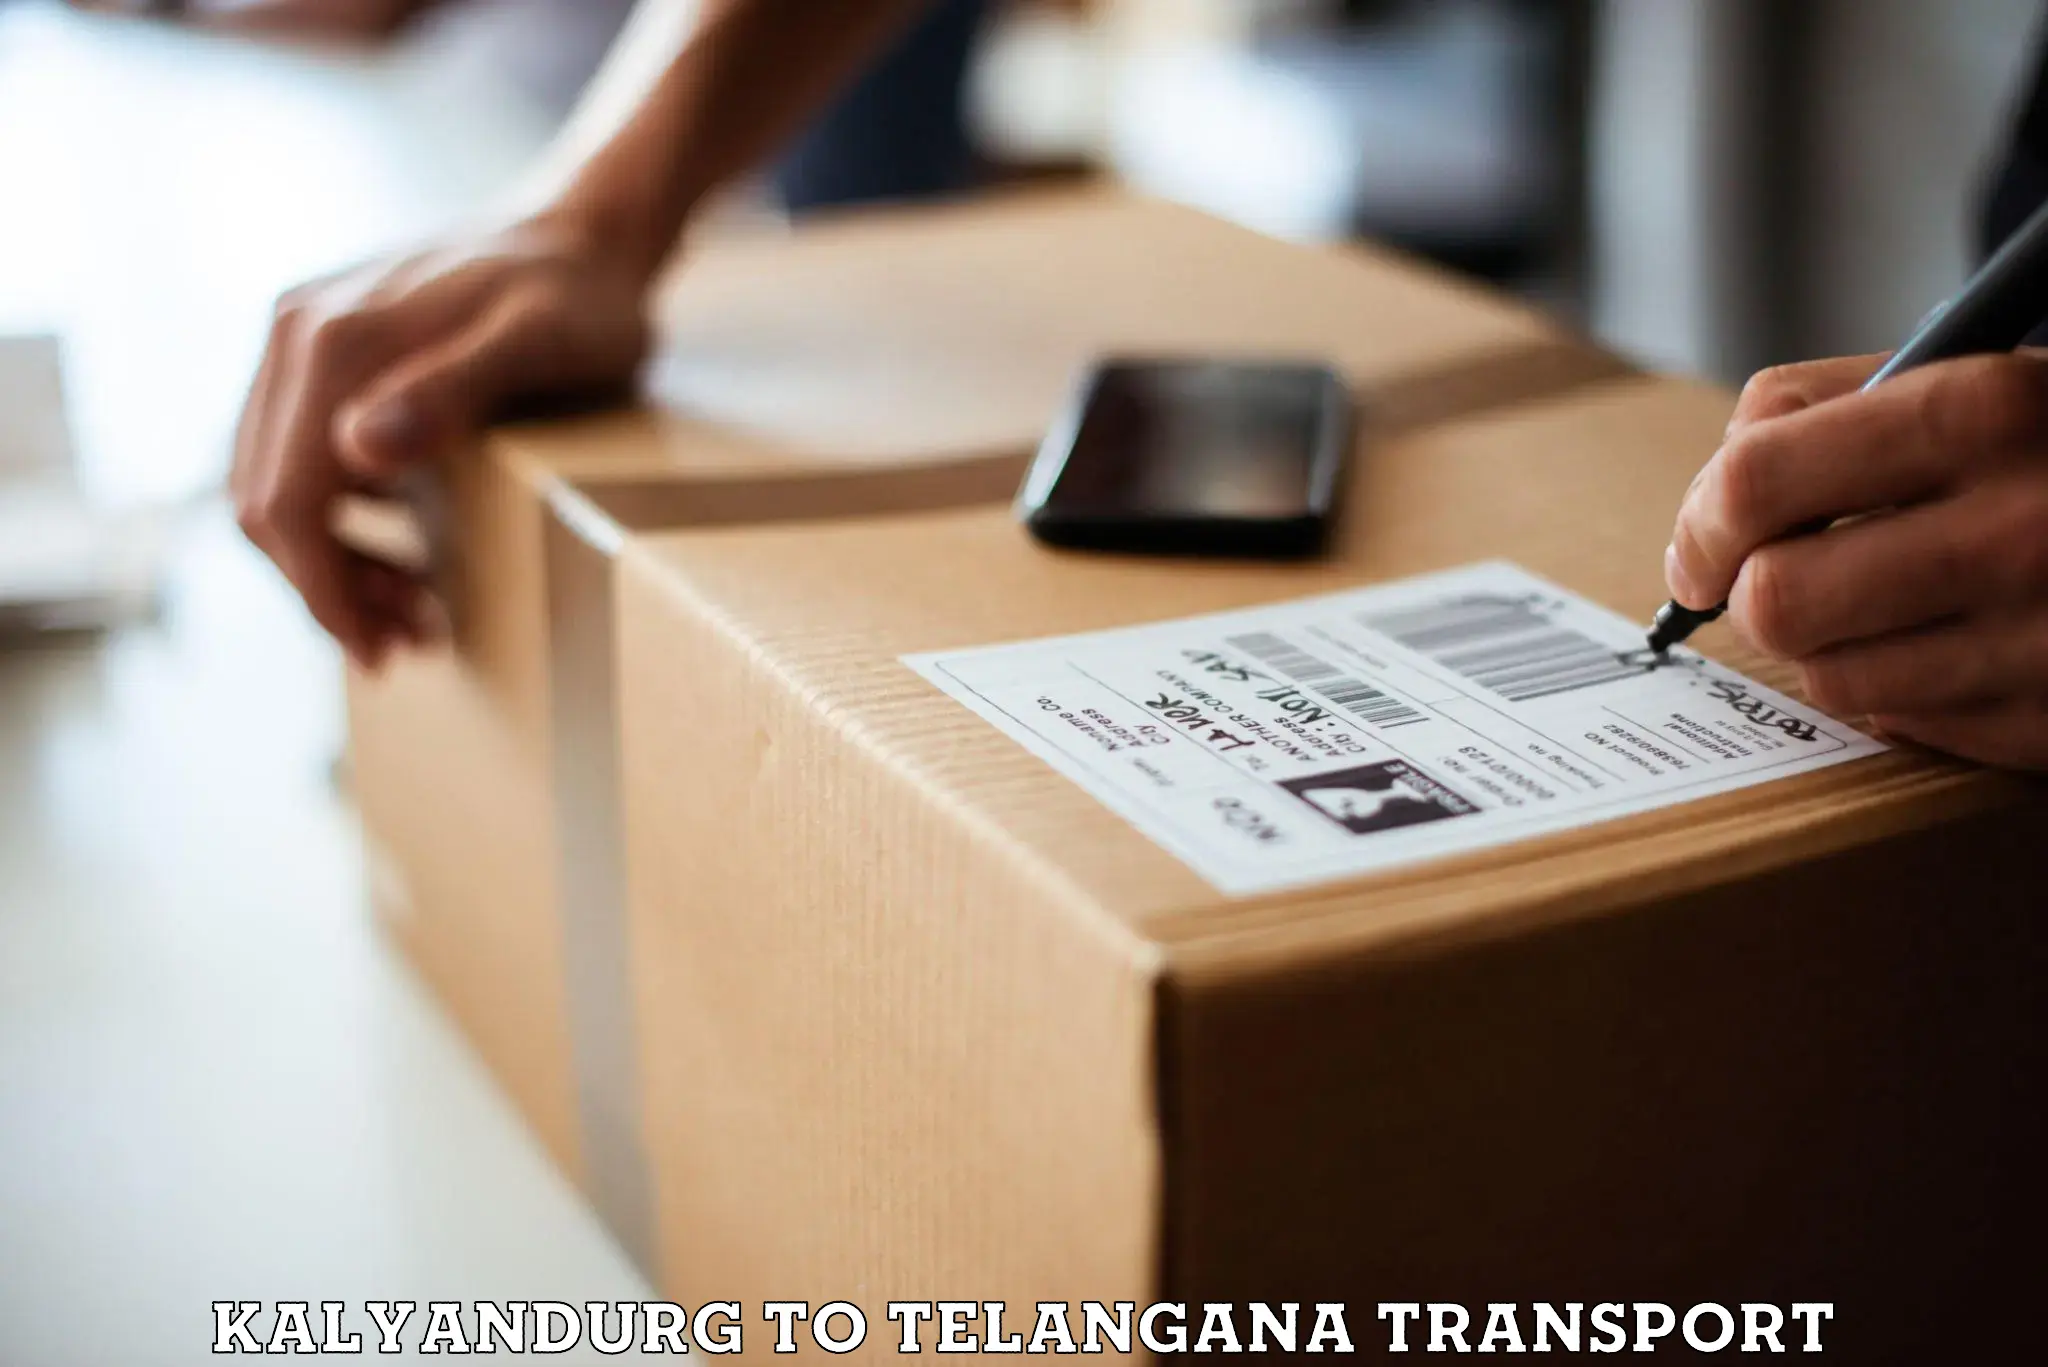 Furniture transport service in Kalyandurg to Yellareddipet